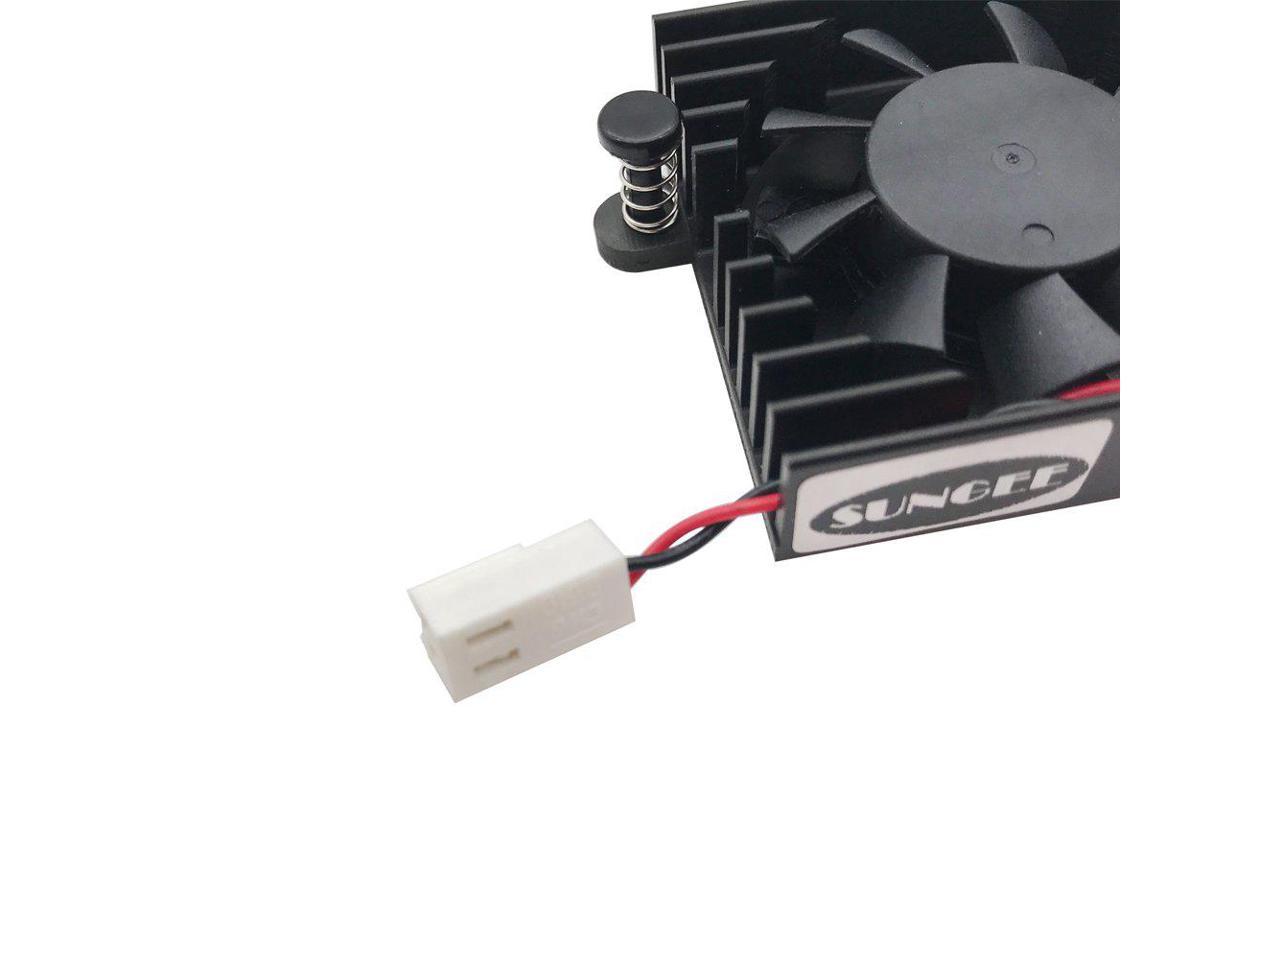 NewHail Heatsink Cooling Fan for DaHua DVR/HDCVI Camera Fan DVR Motherboard Fan 5V DAHUA Fan with 2 Wire 2 Pin